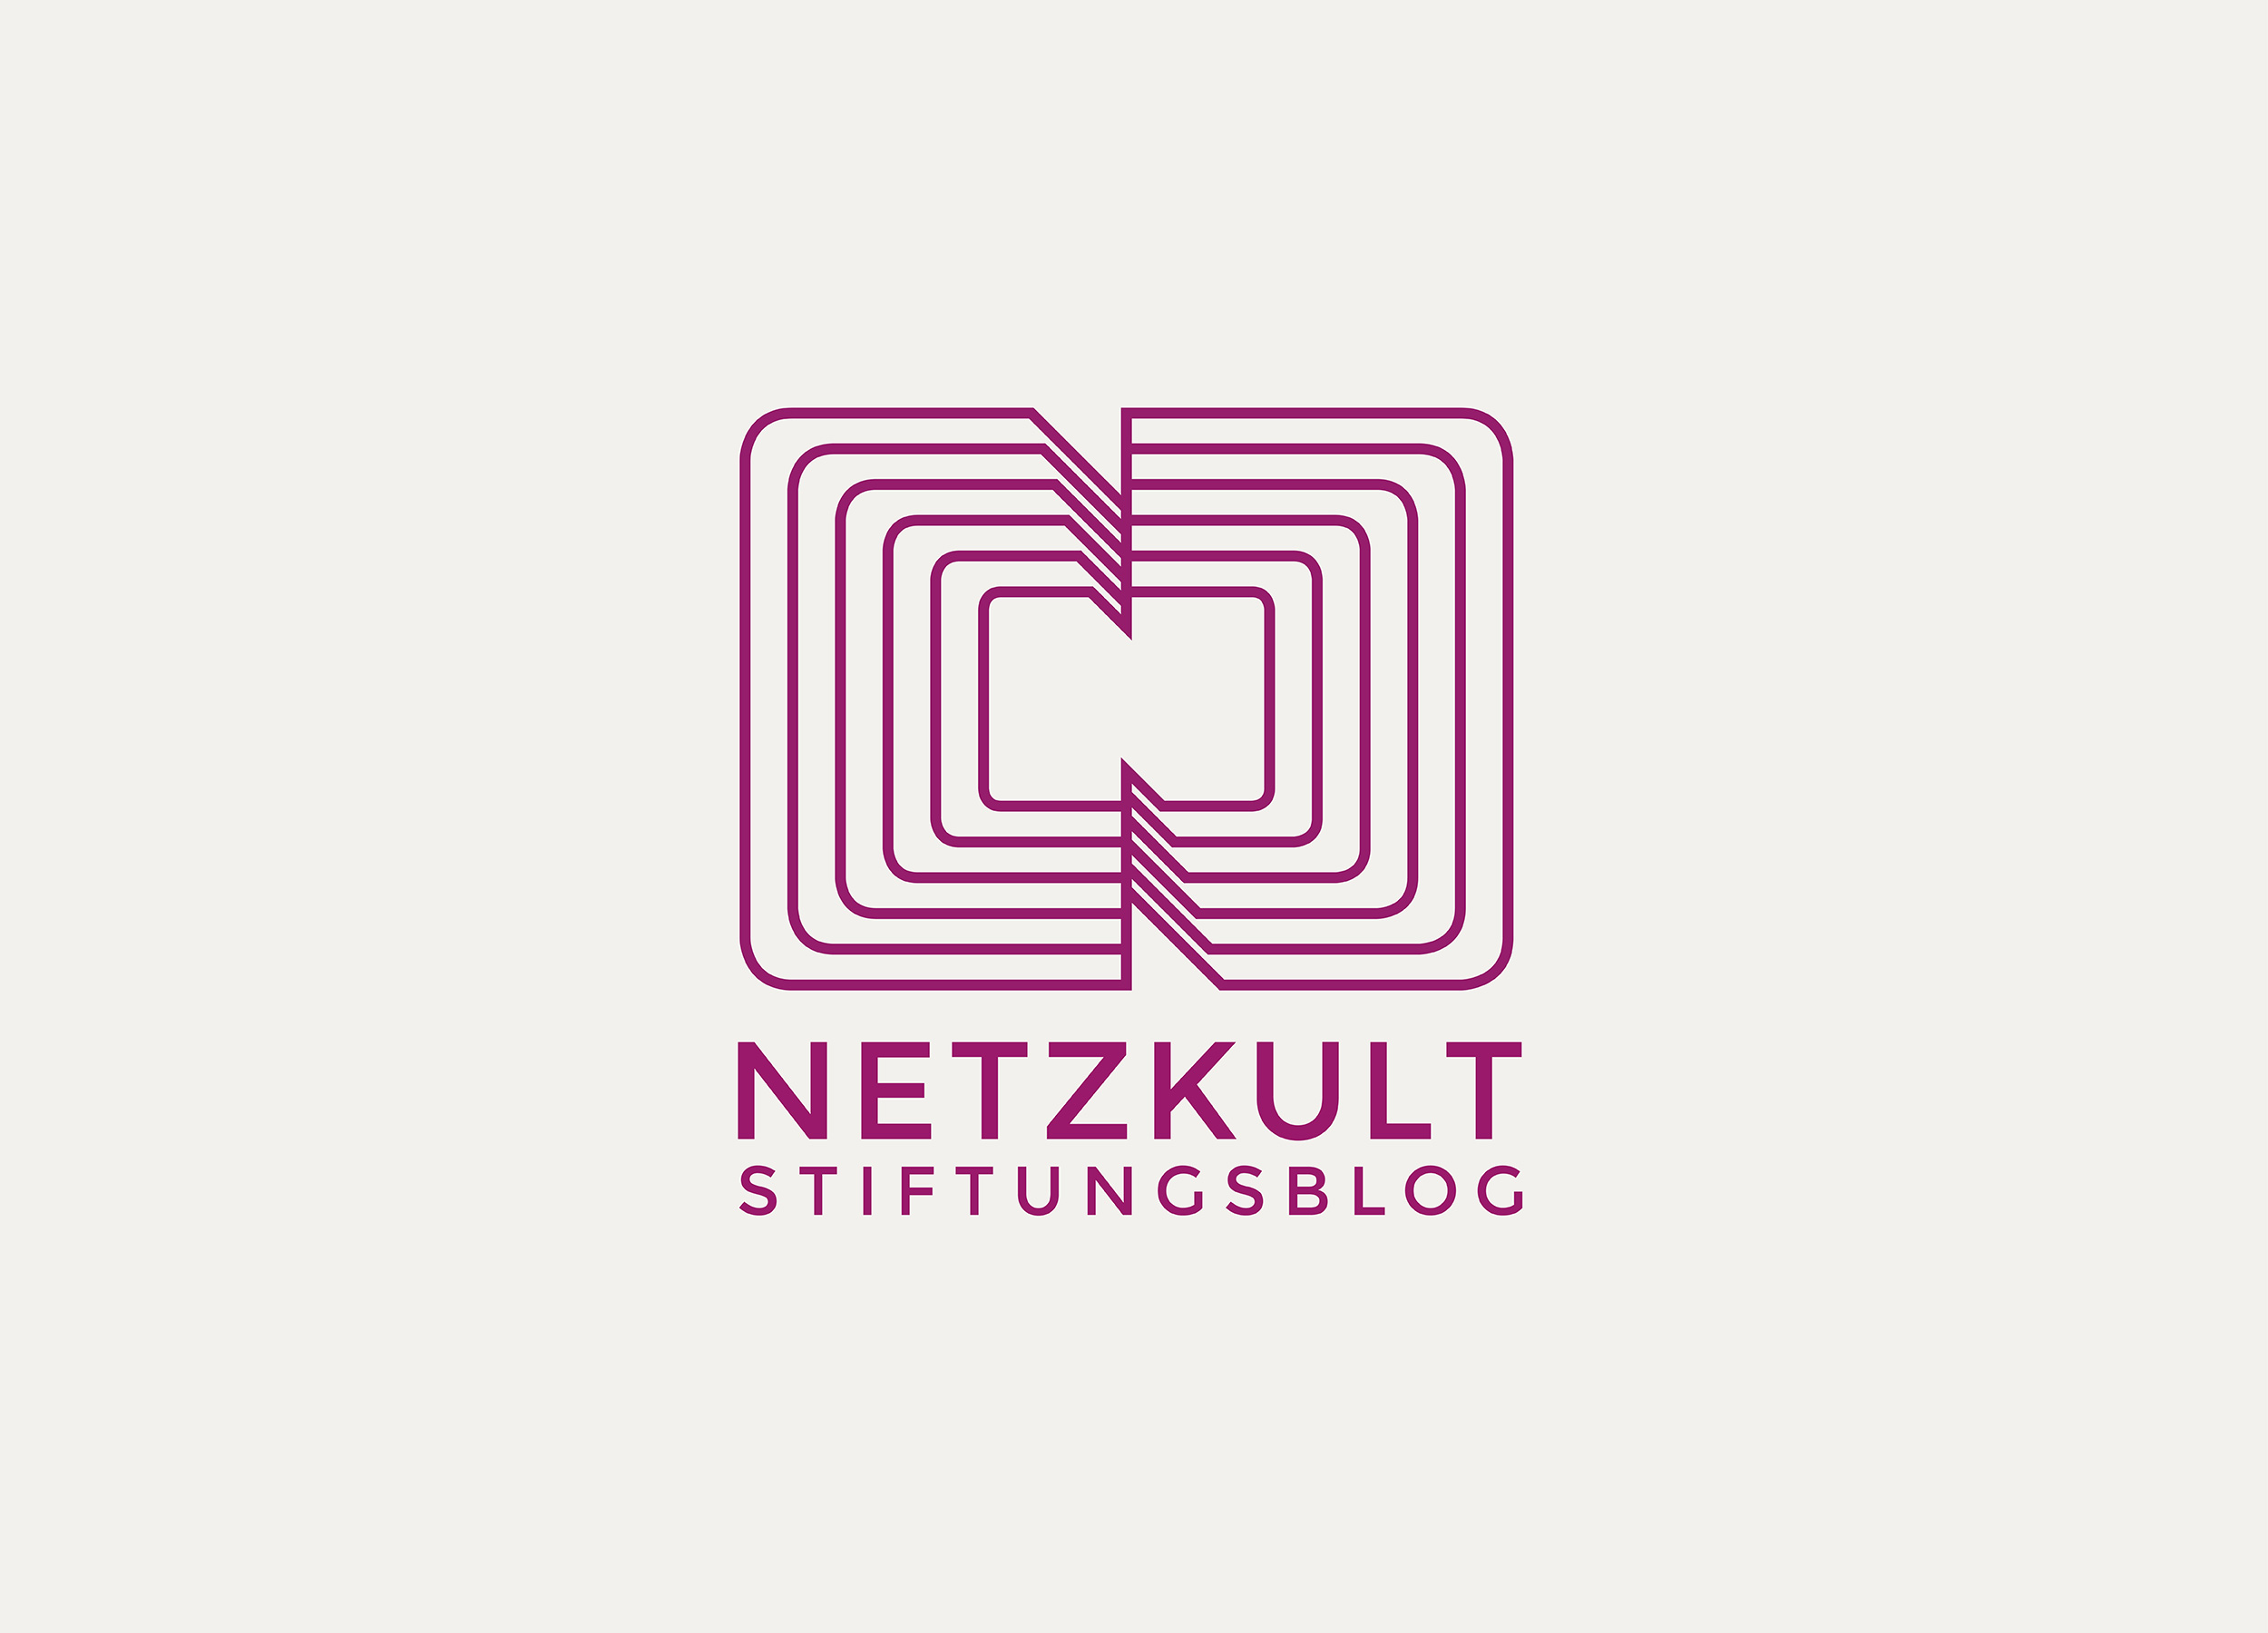 Netzkult ist die Social‐Media‐Division von Masch‐Media in Oberhausen. Im Stiftungsblog sollen Informationen über und für Stifungen und Förderer gebündelt werden.